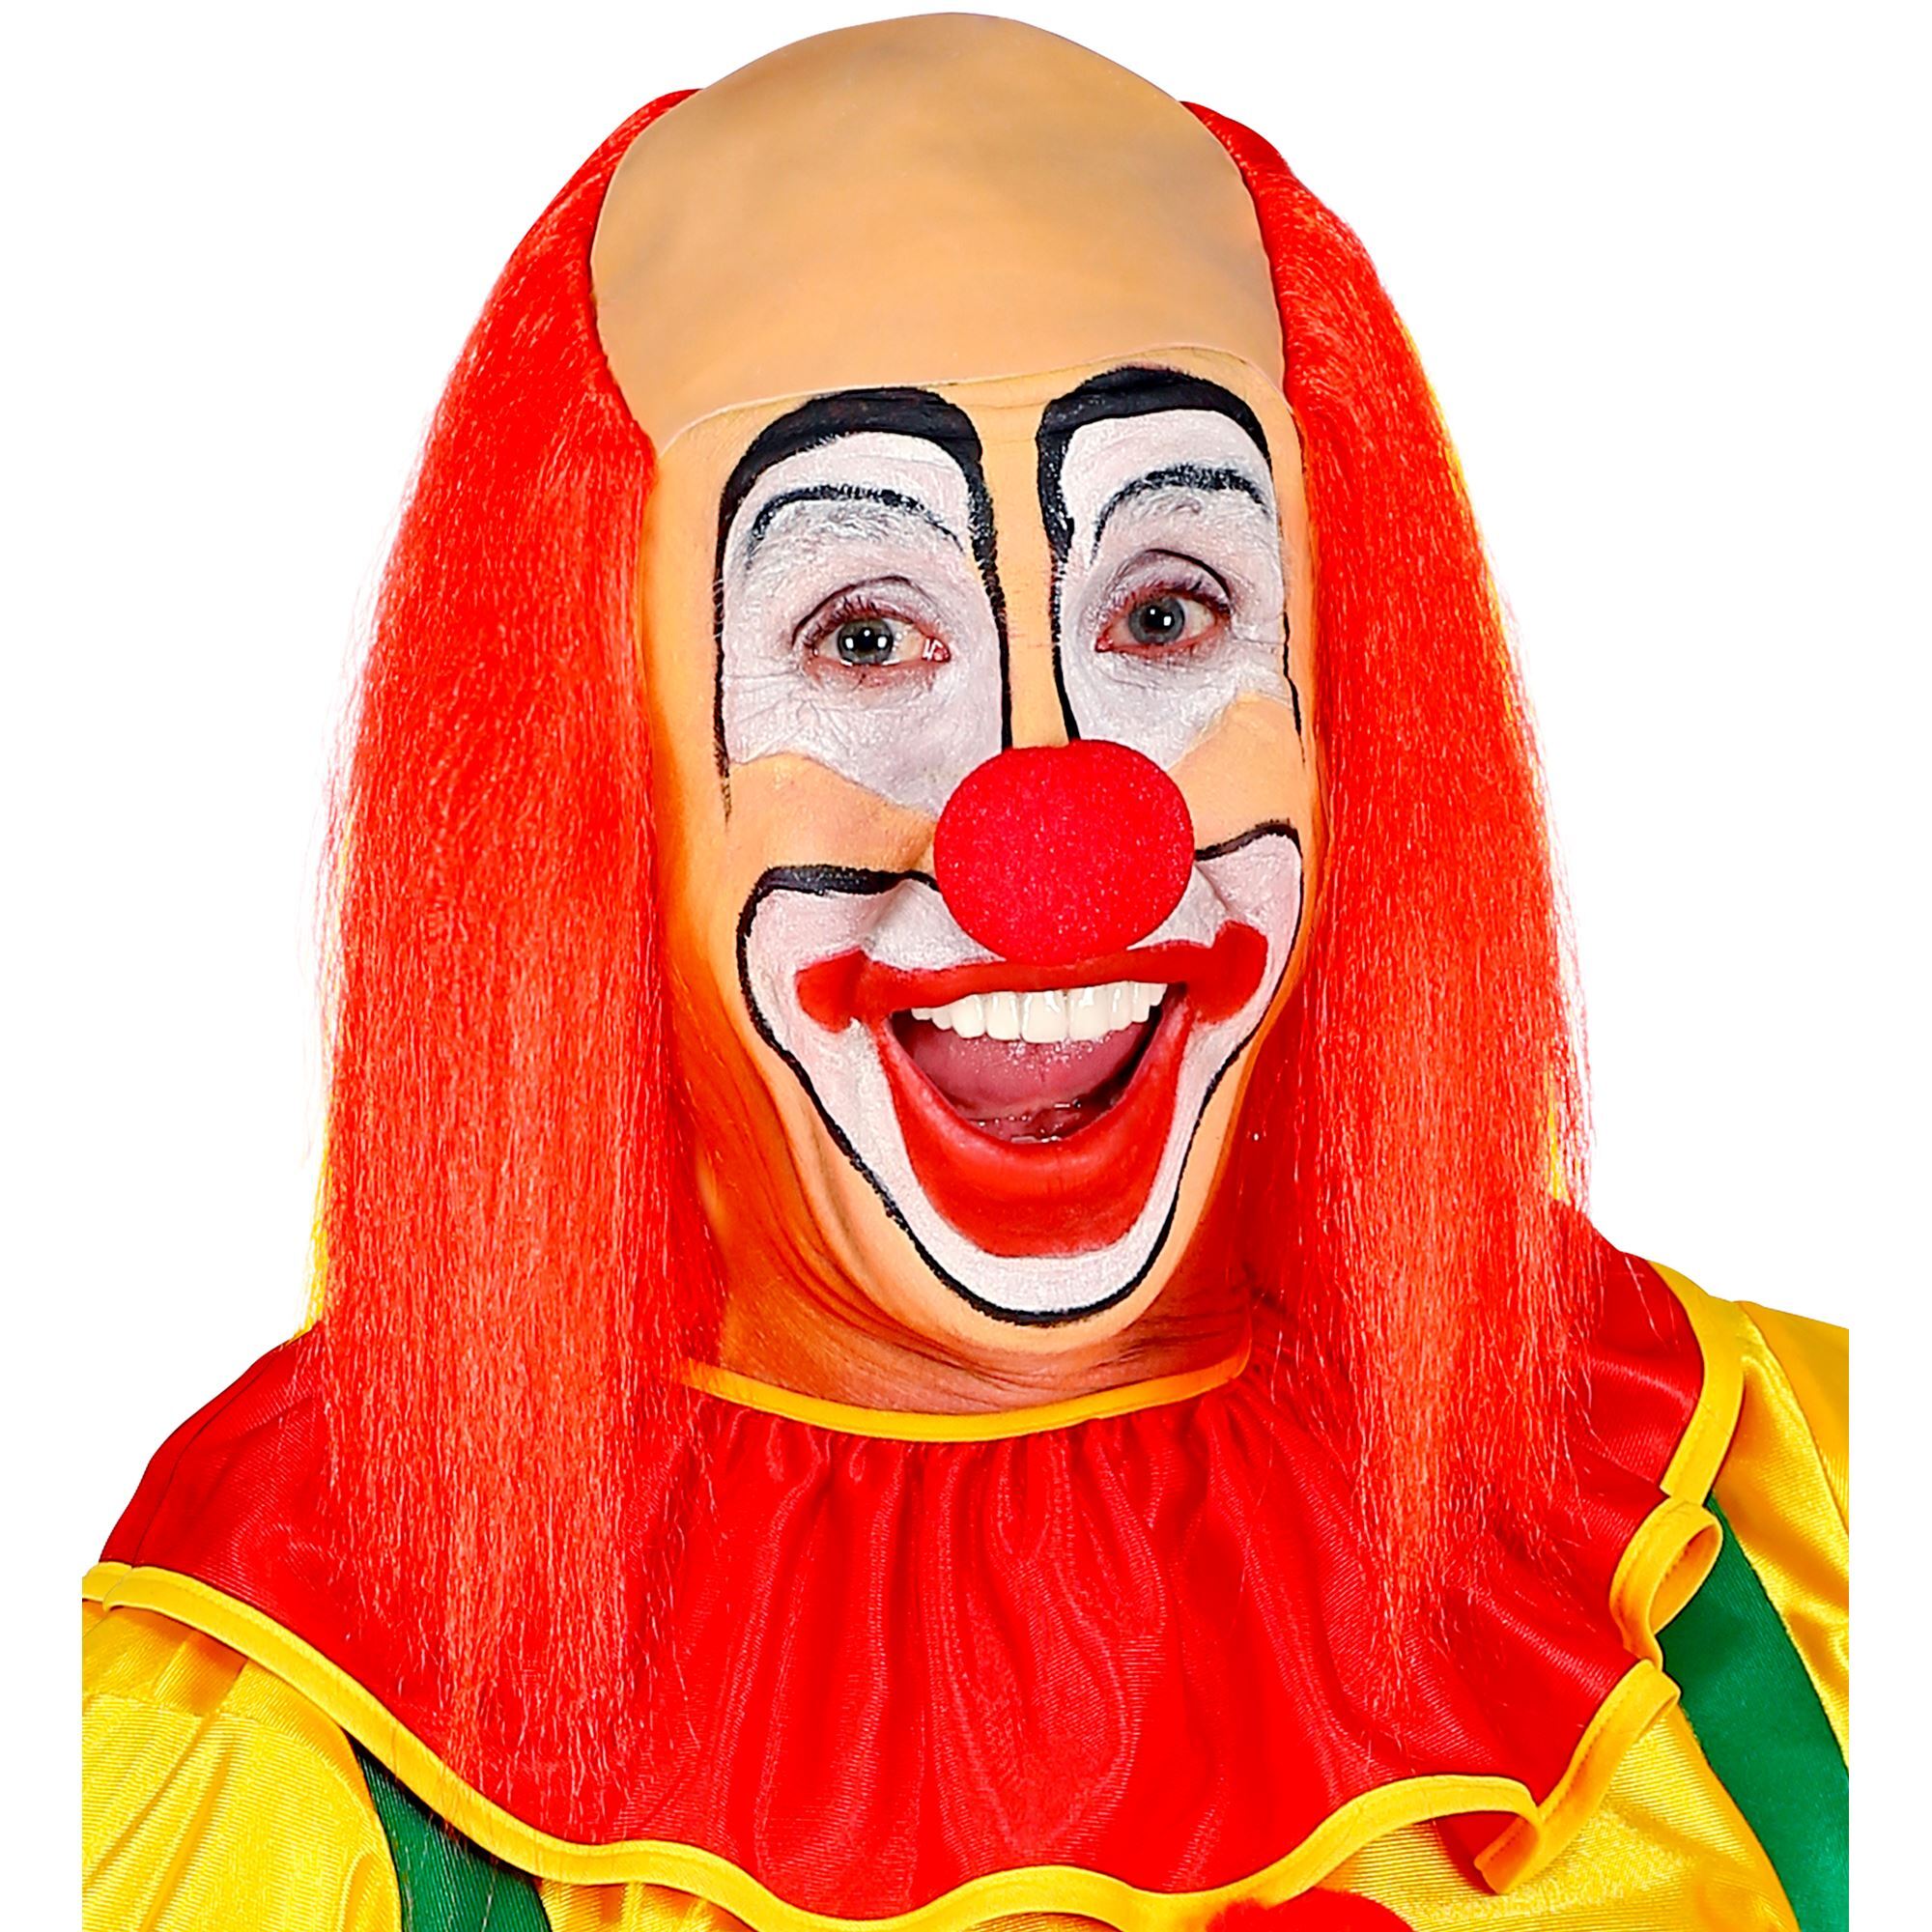 Lollige Clown kaal hoofd met lang rood clownshaar 